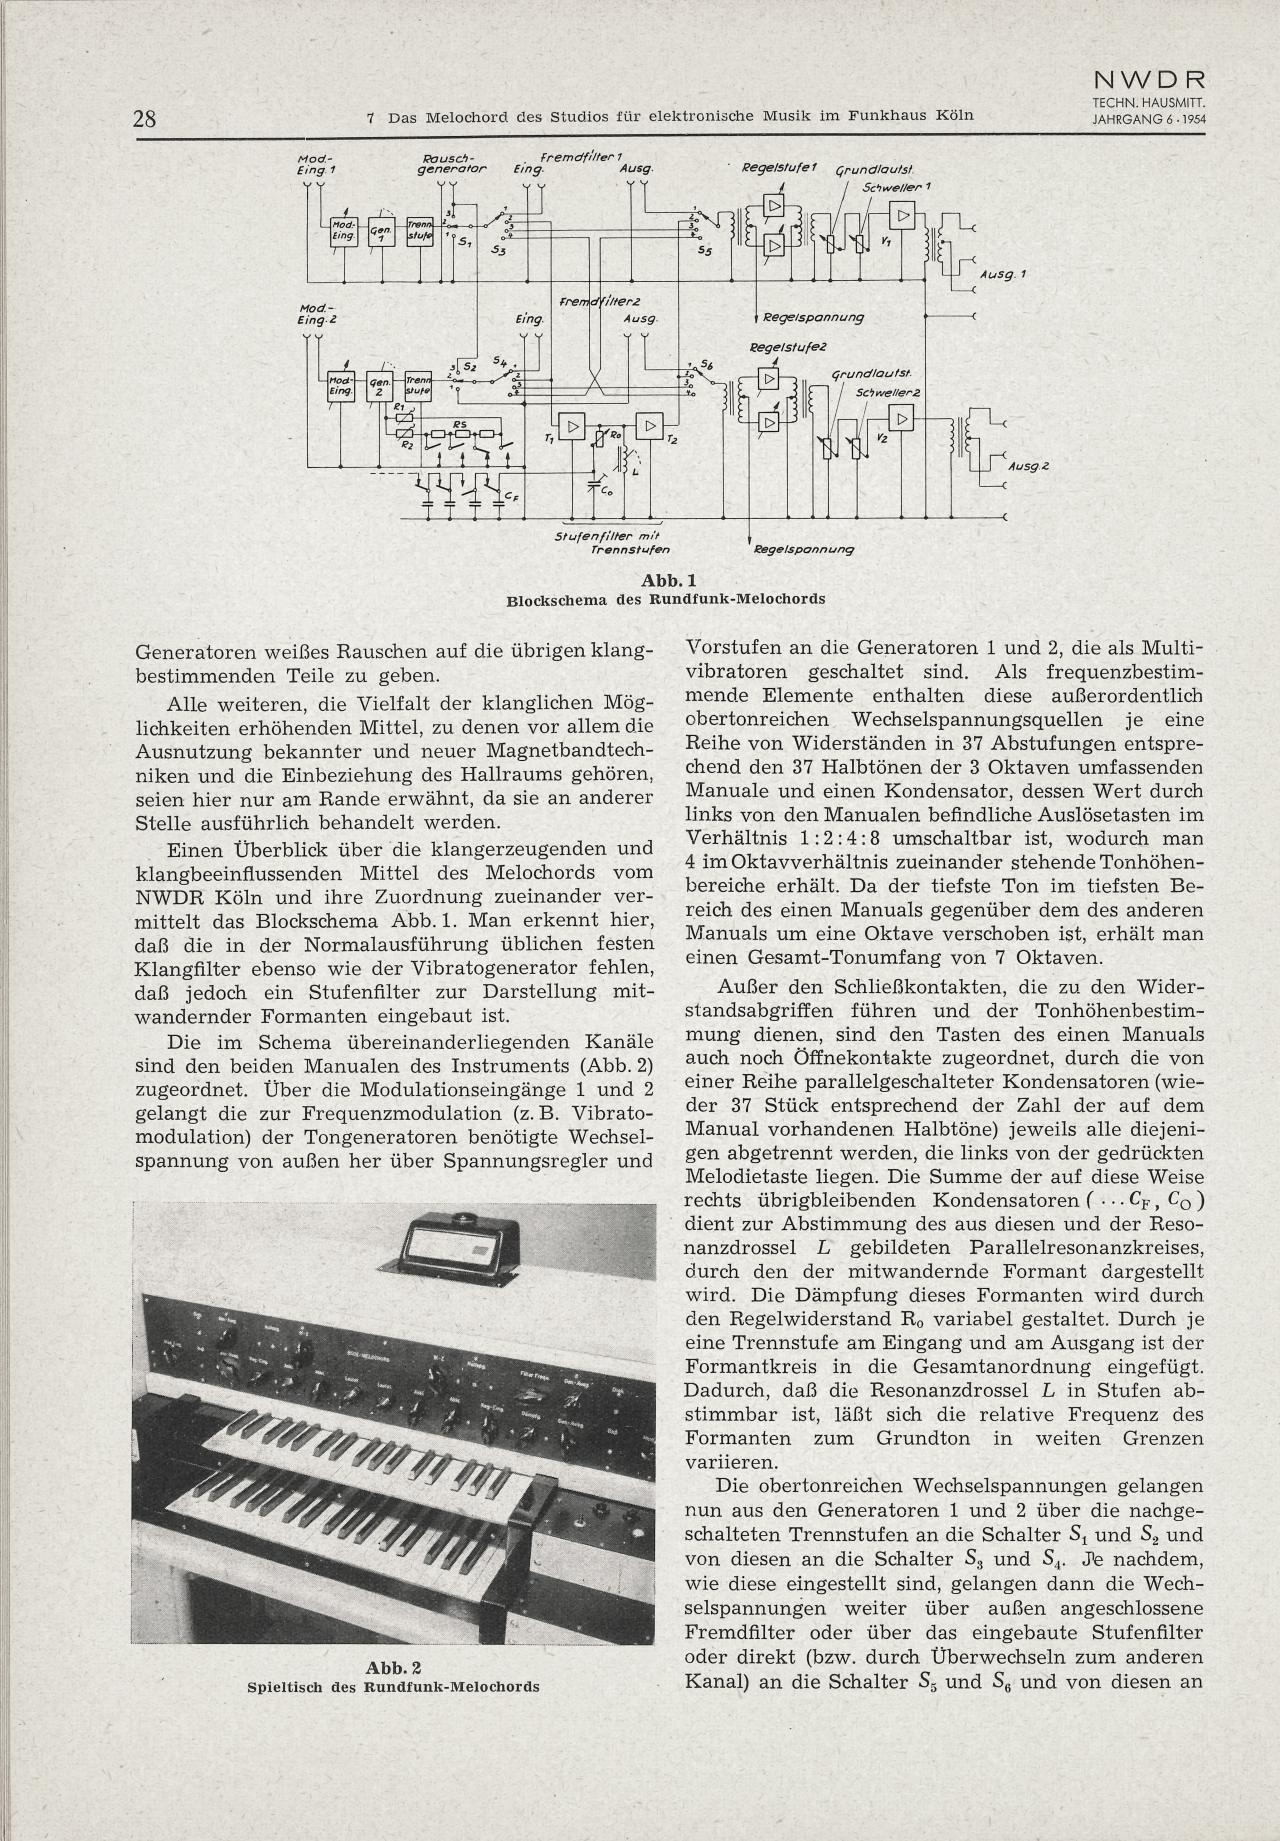 Harald Bode: »Das Melochord des Studios für elektronische Musik im Funkhaus Köln« (1954)